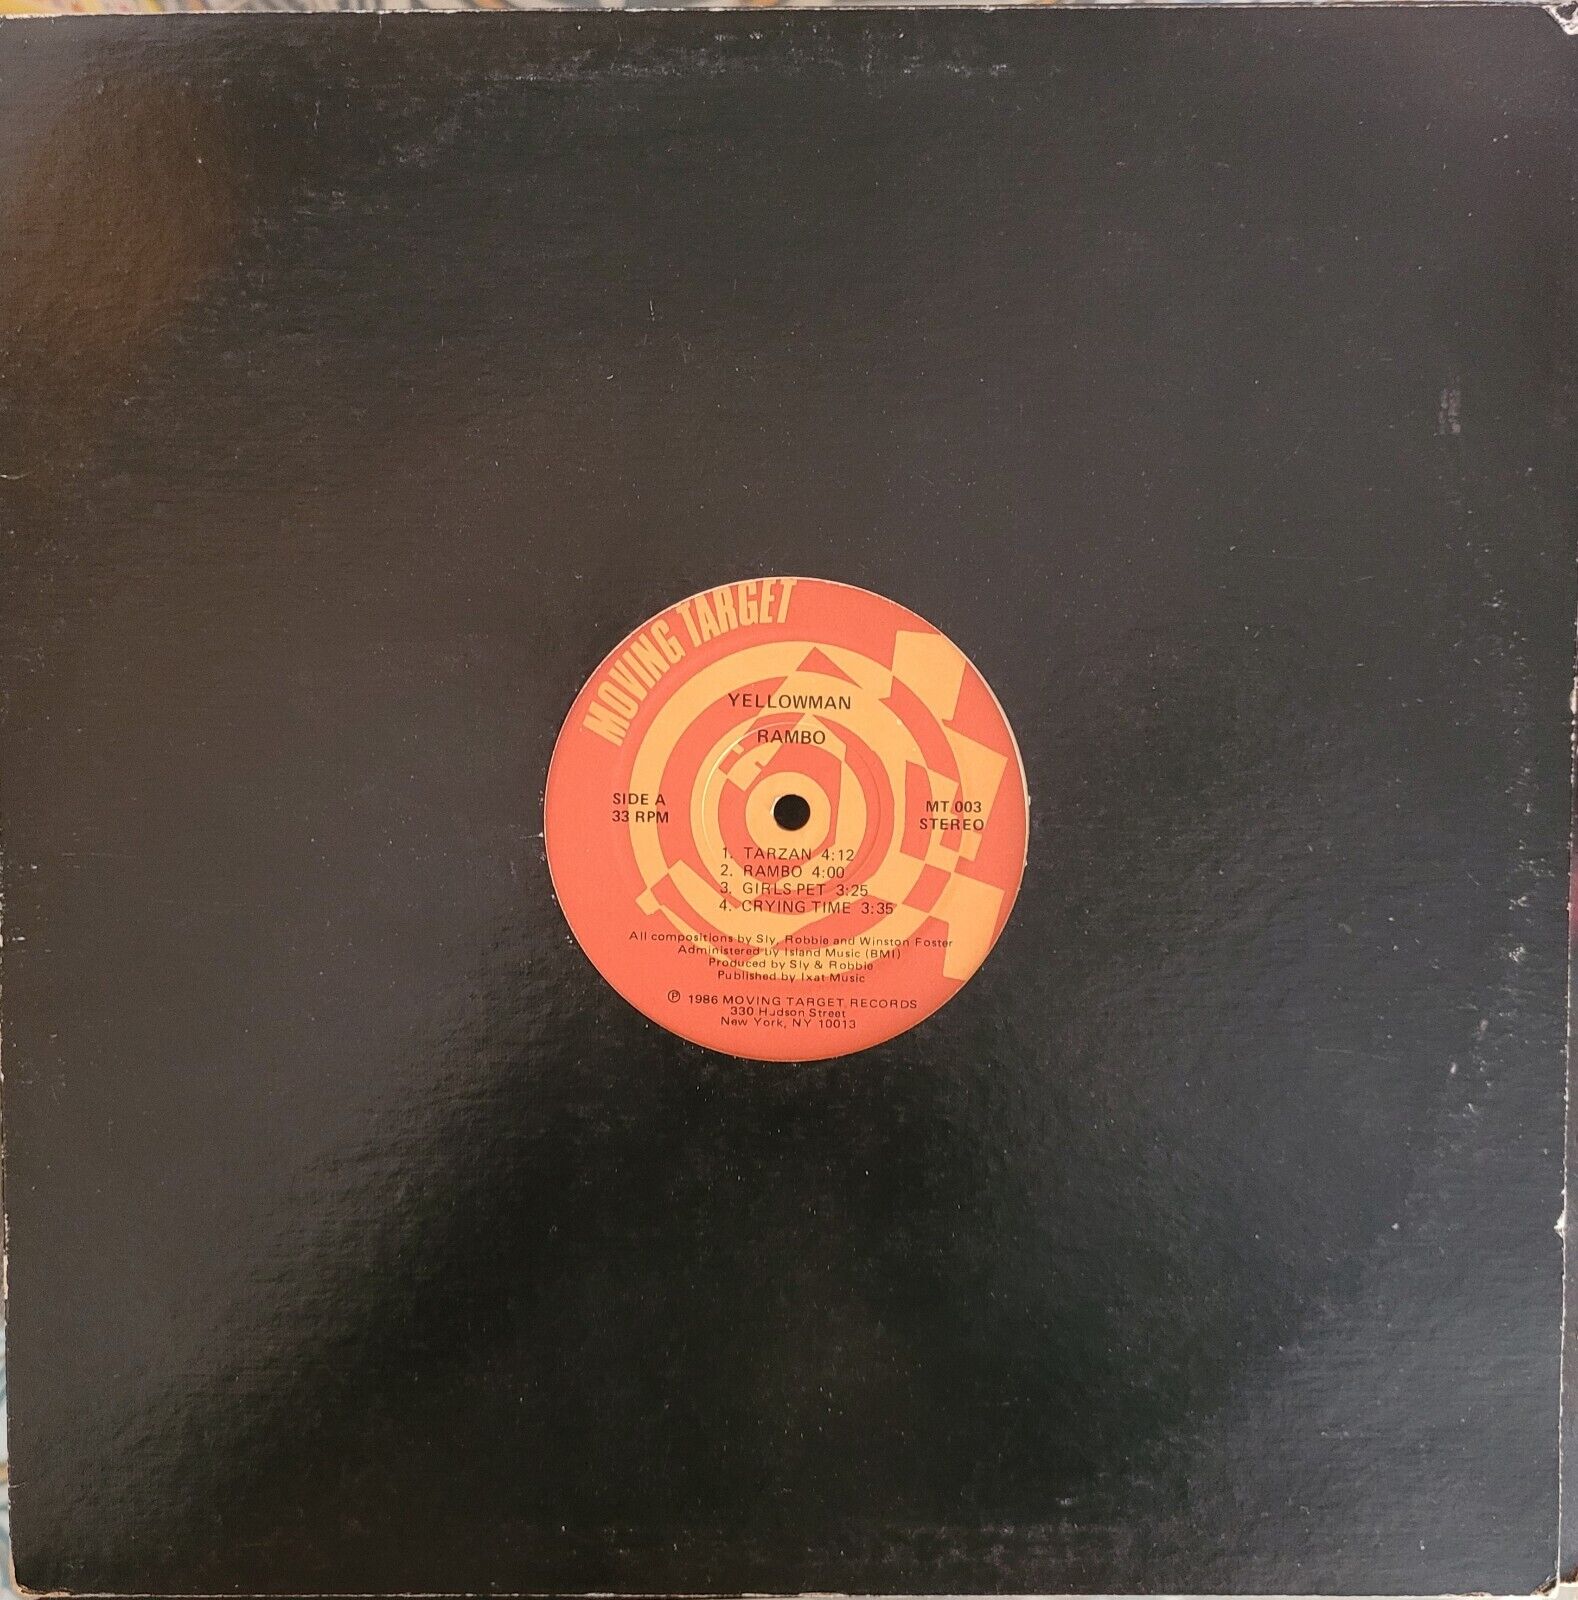 Yellowman Rambo Roots Dancehall Reggae Vinyl 1986 MT 003